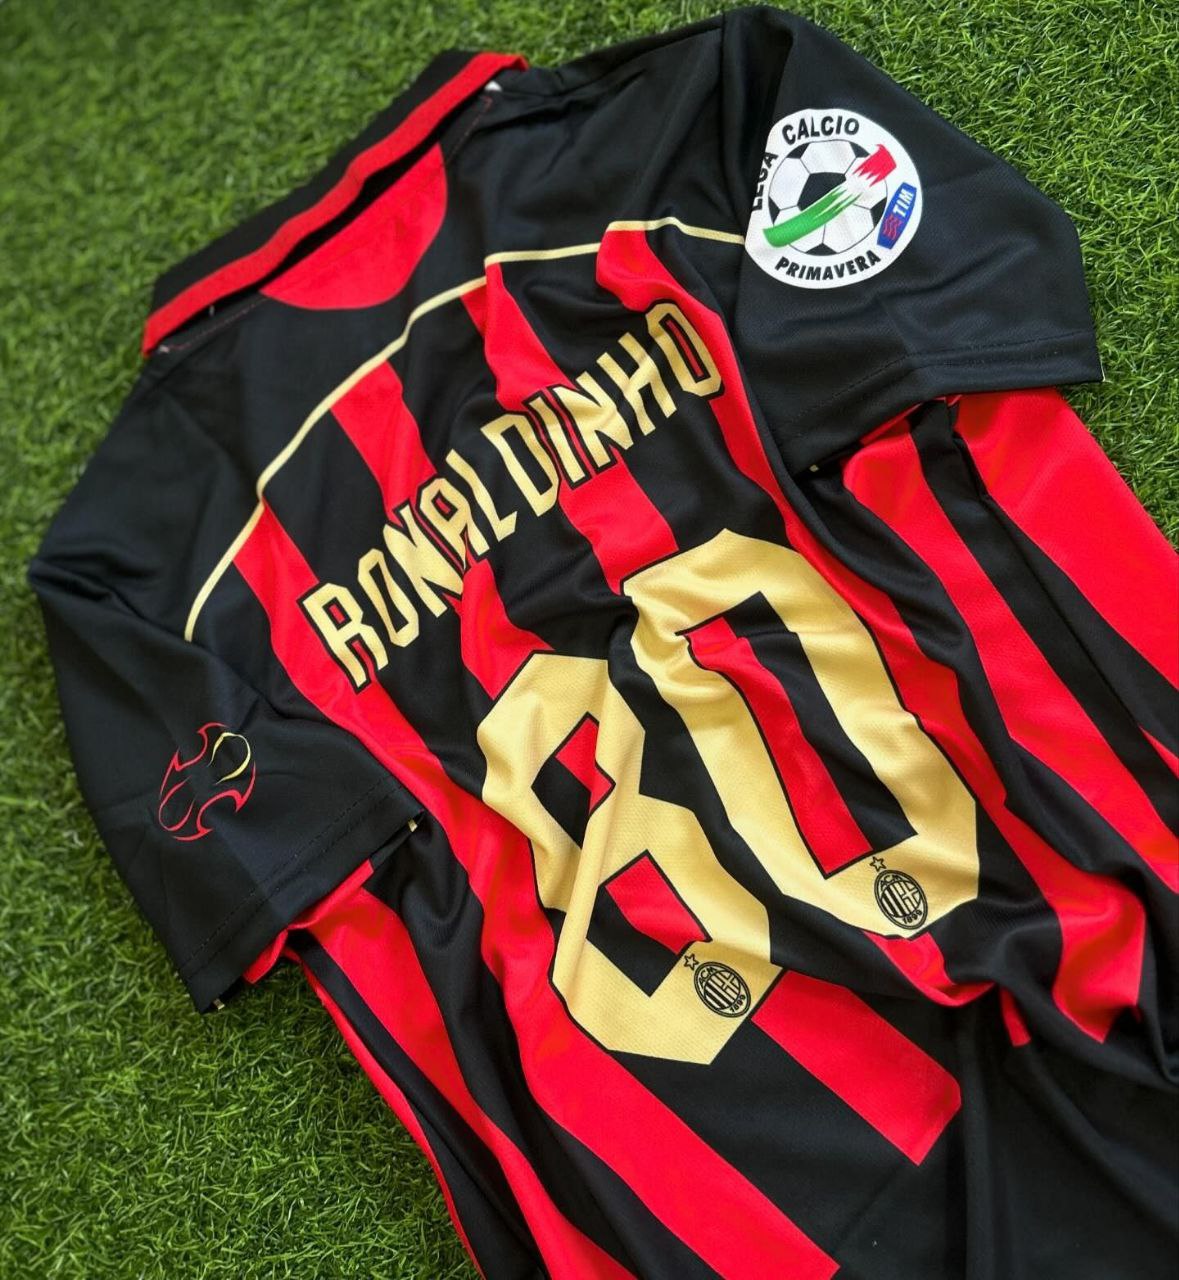 Ronaldinho AC Mailand Retro-Trikot